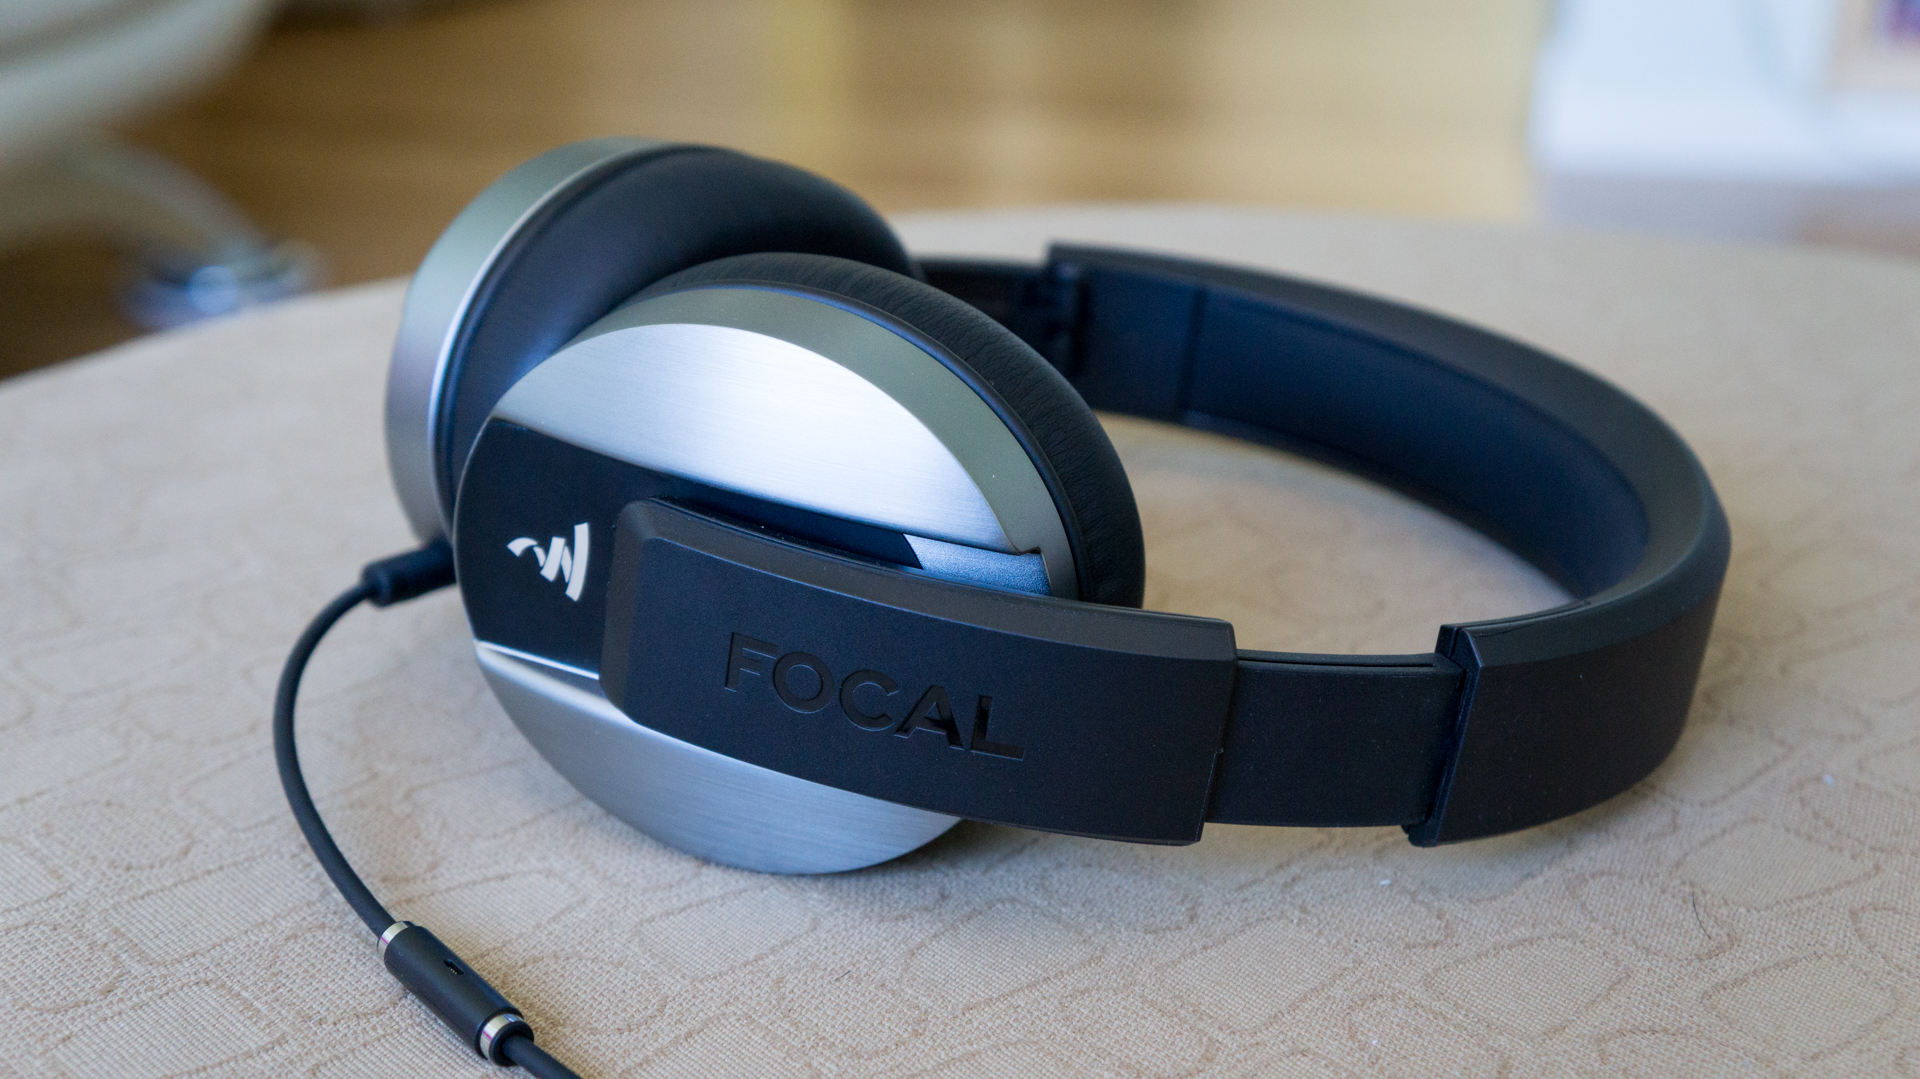 Focal Listen review | TechRadar